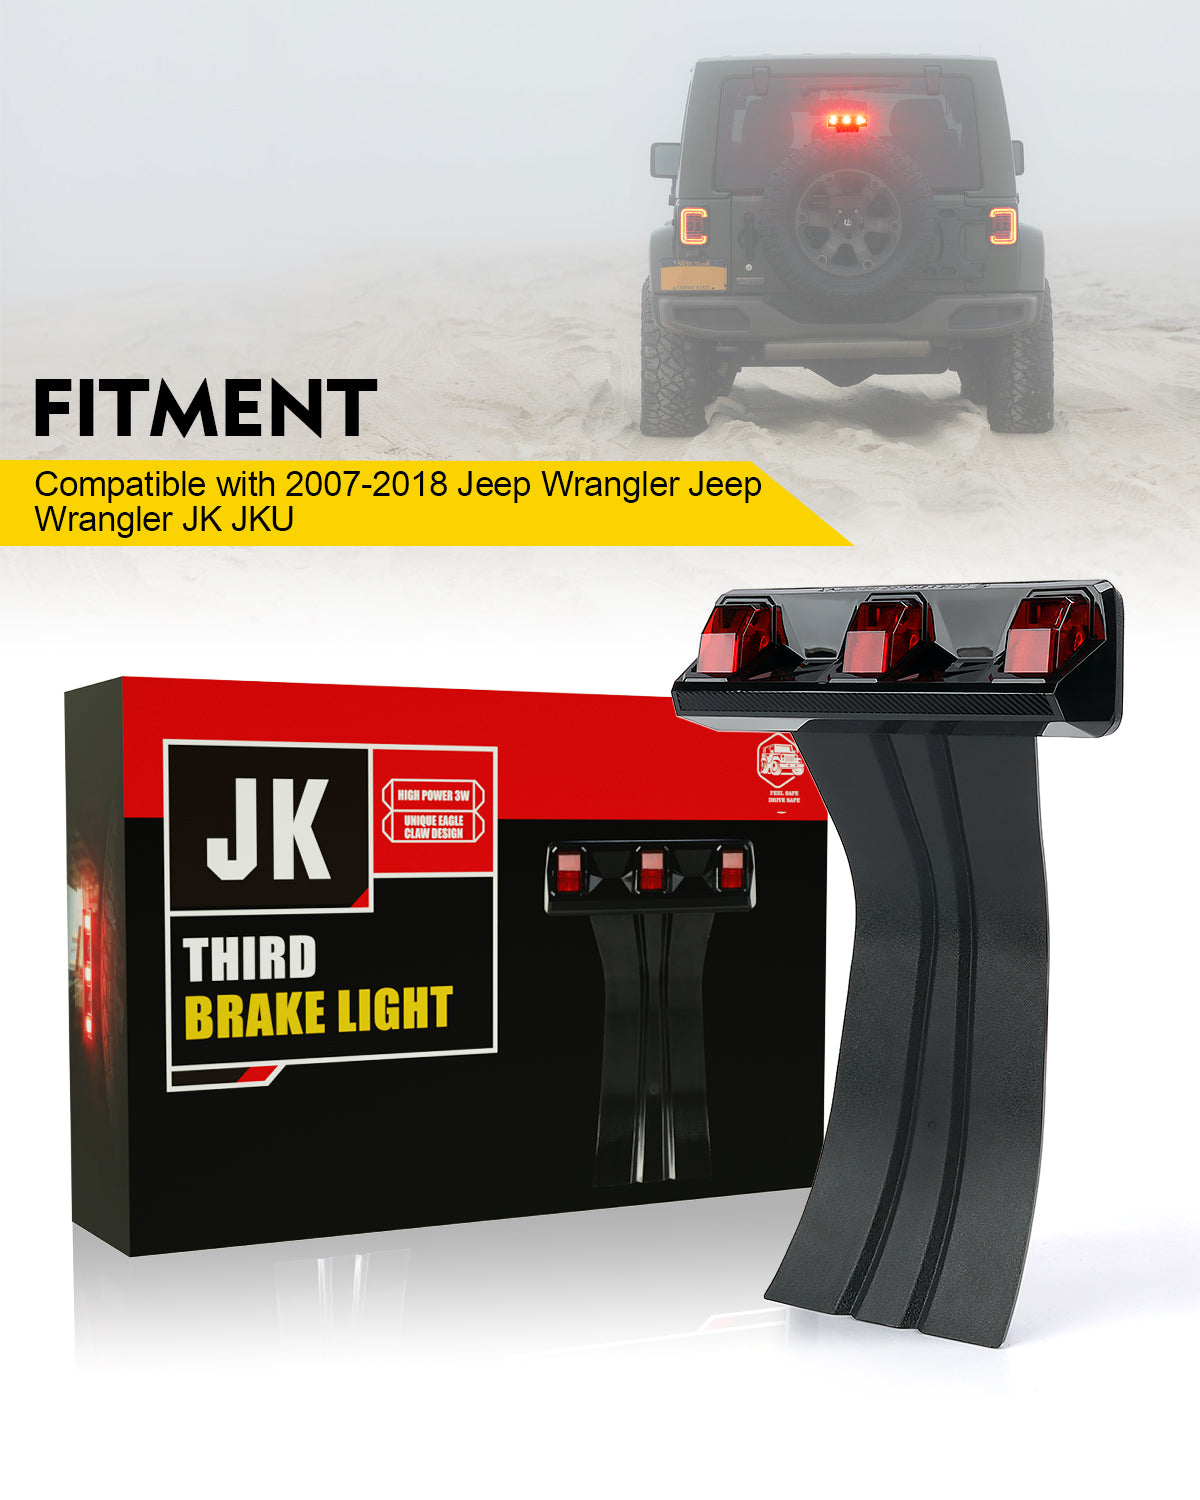 LED Third Brake Light for Jeep Wrangler JK